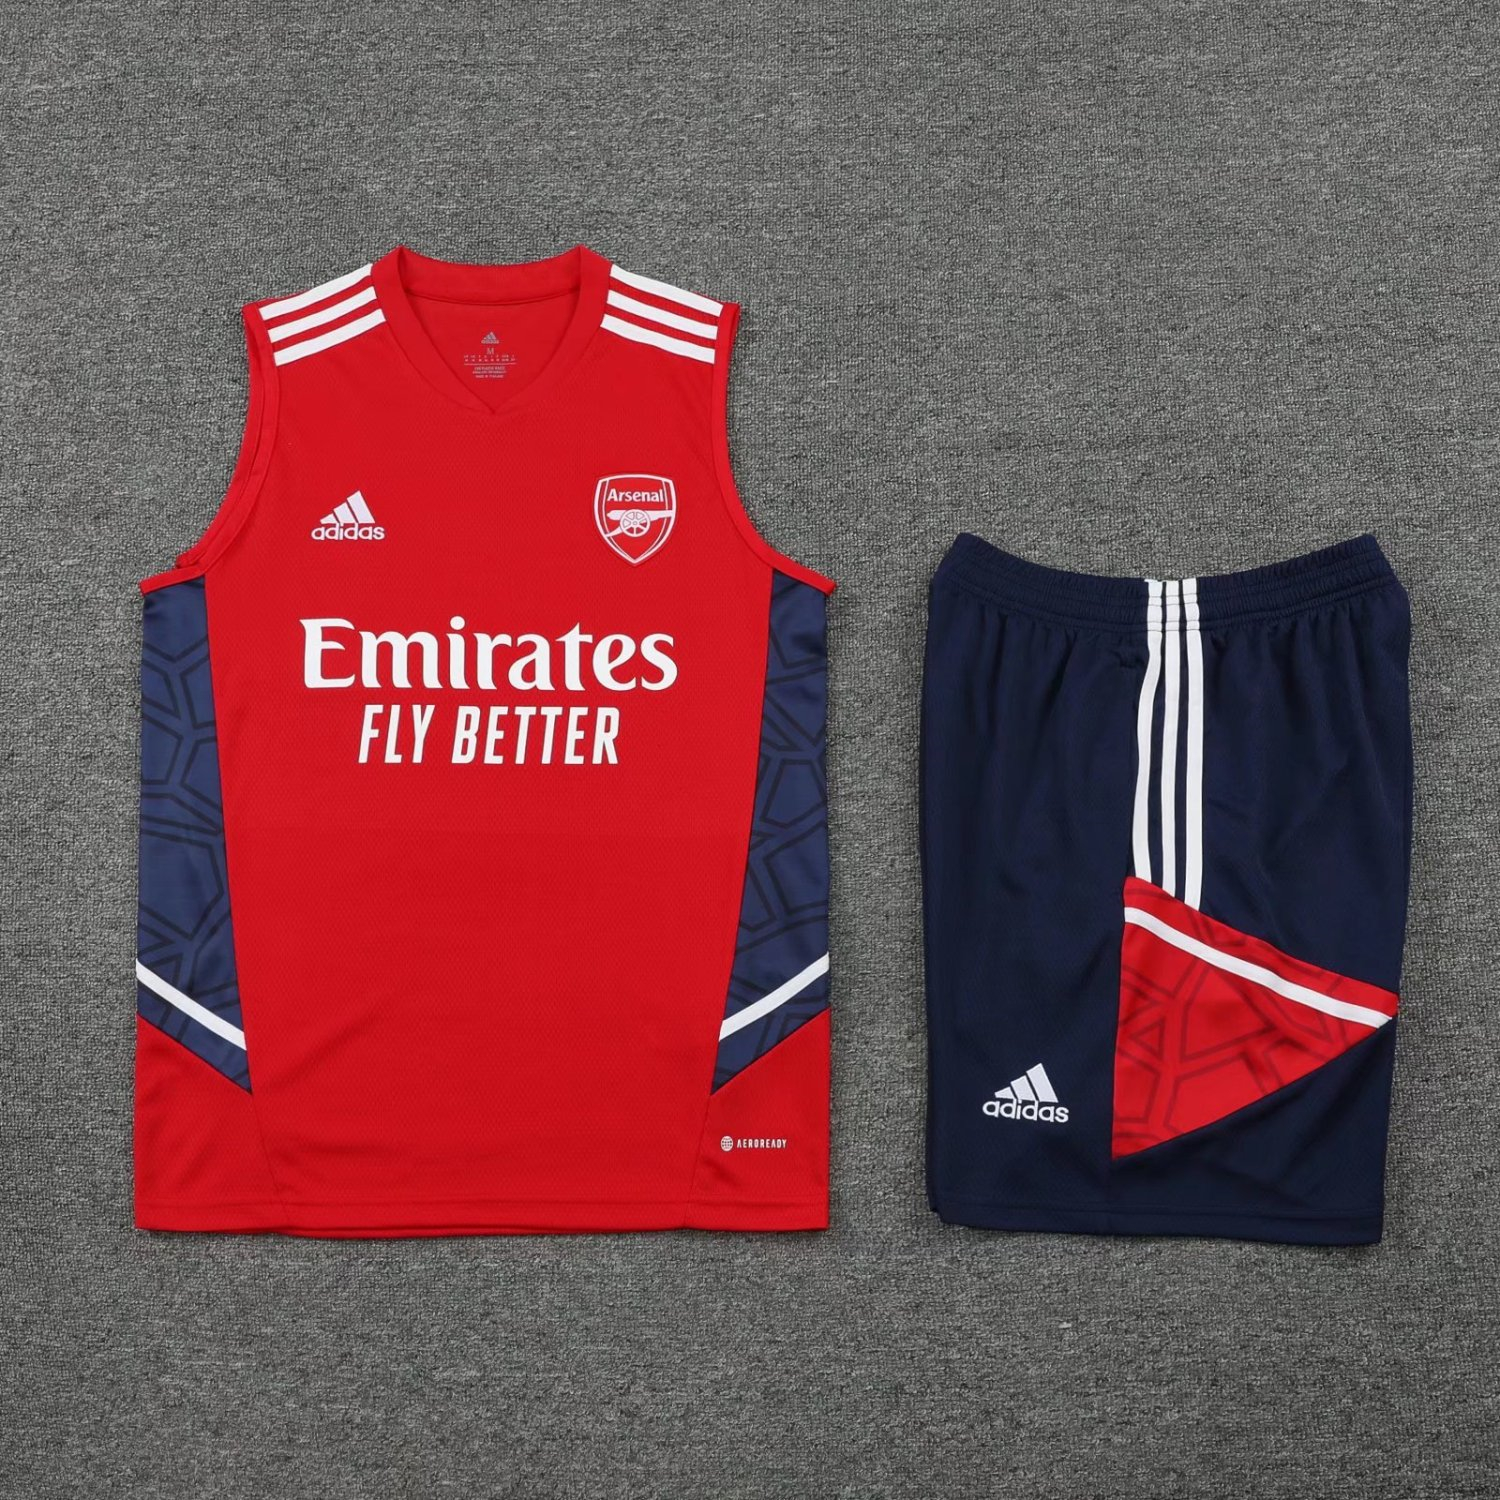 22-23 Arsenal Red Soccer Football Training Kit (Singlet + Shorts) Man